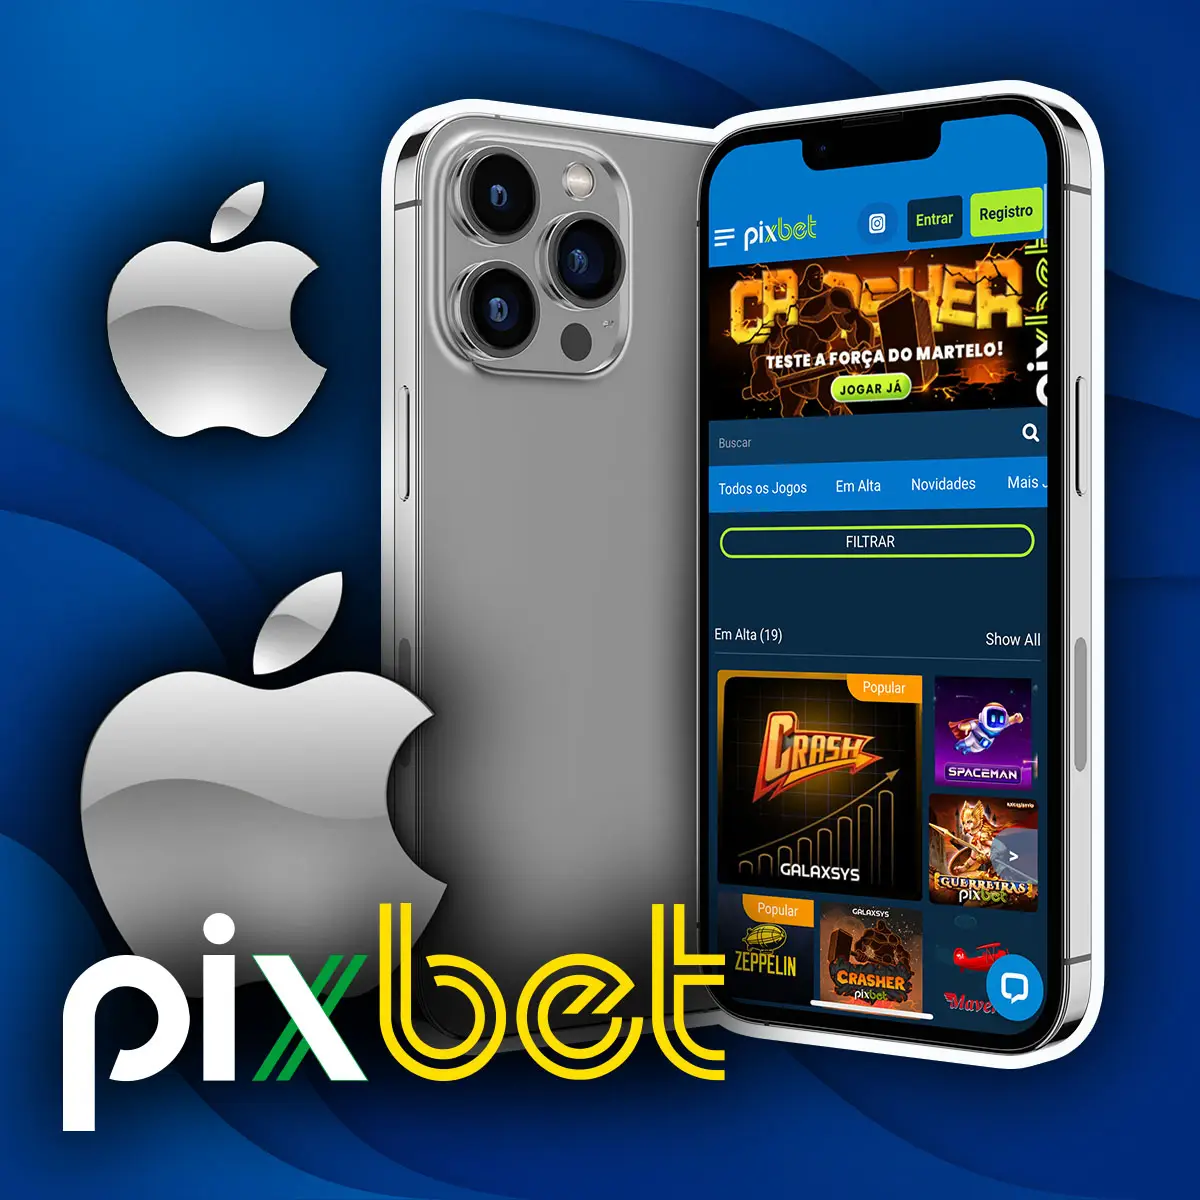 Instruções para instalar a aplicação móvel para iOS da casa de apostas Pixbet no Brasil